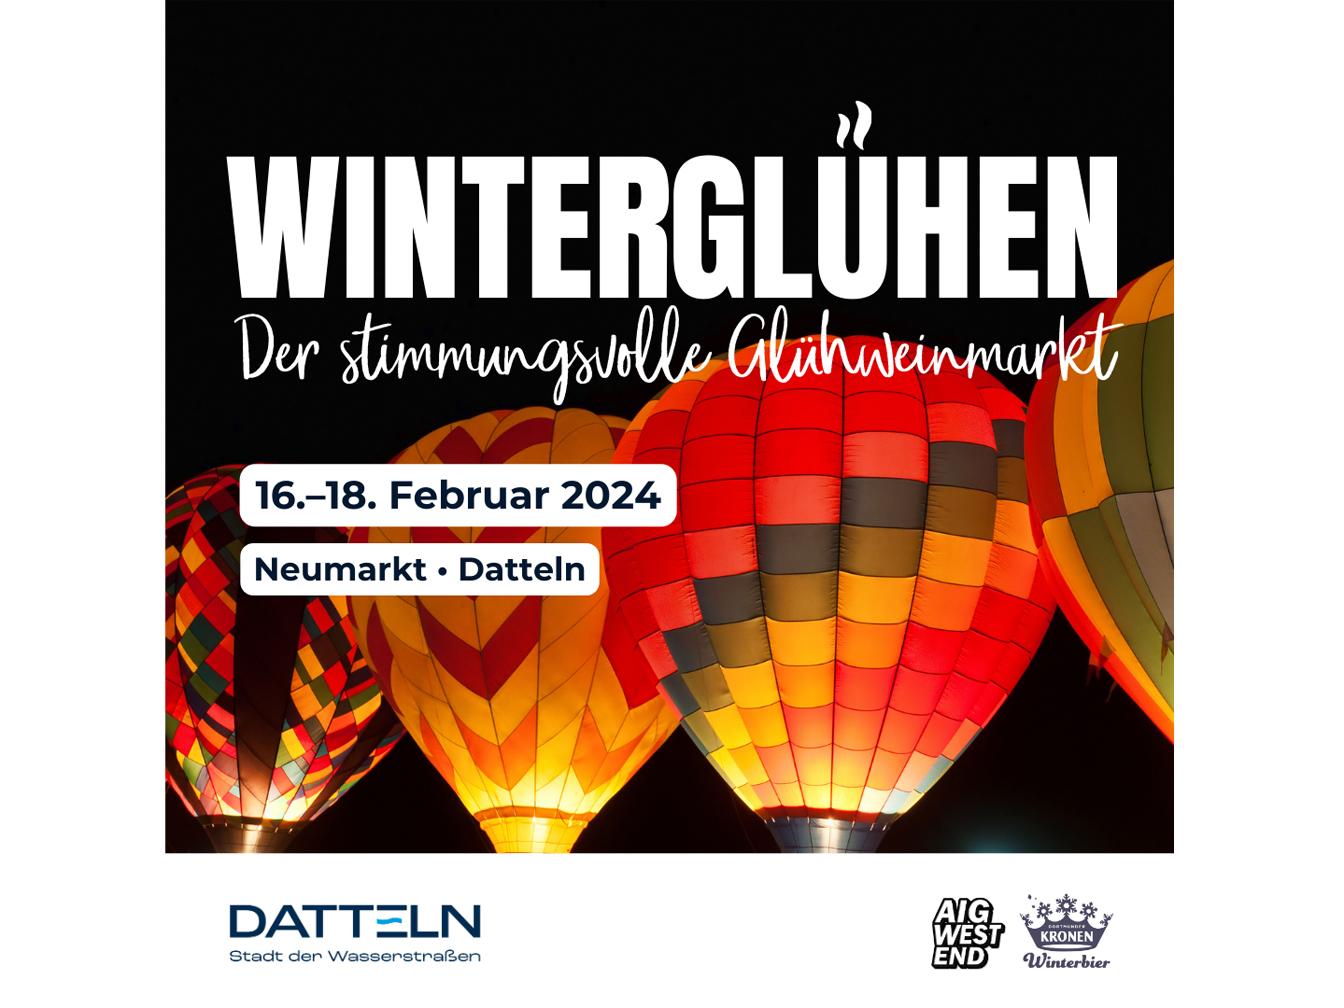 Mehrere Heißluftballone und Hinweise zur Veranstaltung Winterglühen, die vom 16. bis 18. Februar 2024 auf dem Dattelner Neumarkt stattfindet.